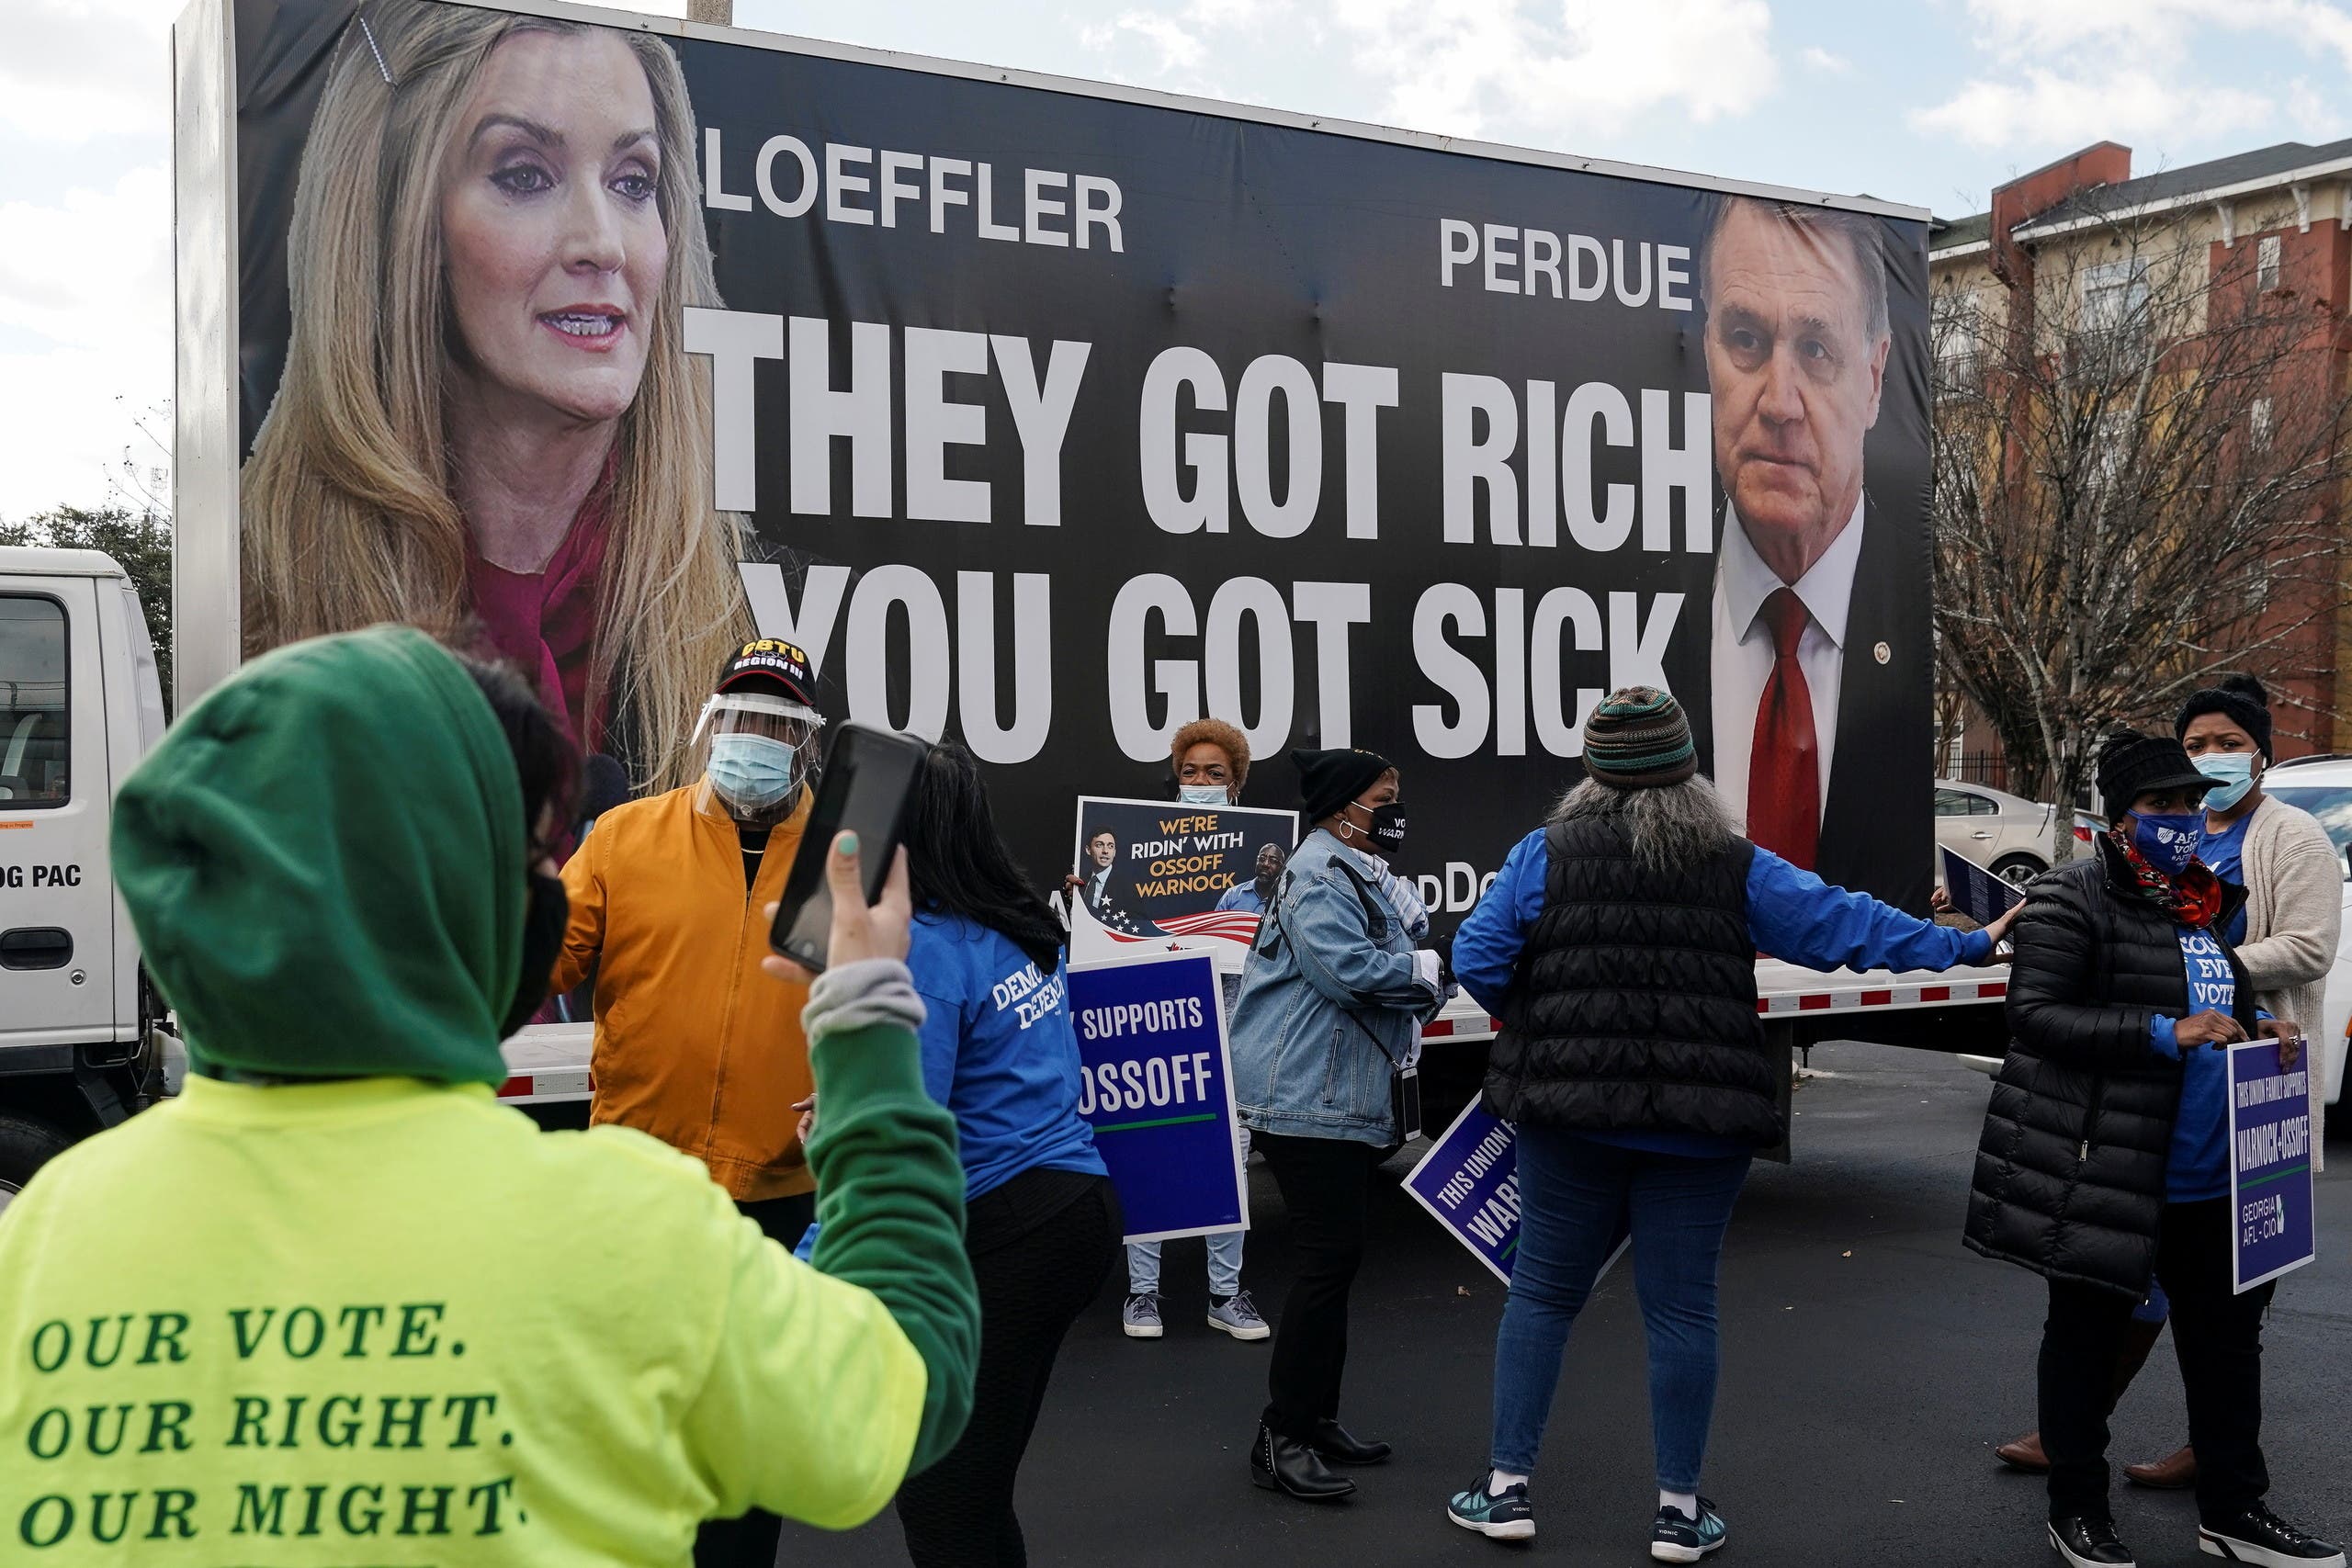 لافتة على شاحنة تنتقد عضوي مجلس الشيوخ الجمهوريين عن ولاية جورجيا الأمريكية كيلي لوفلر وديفيد بيردو  